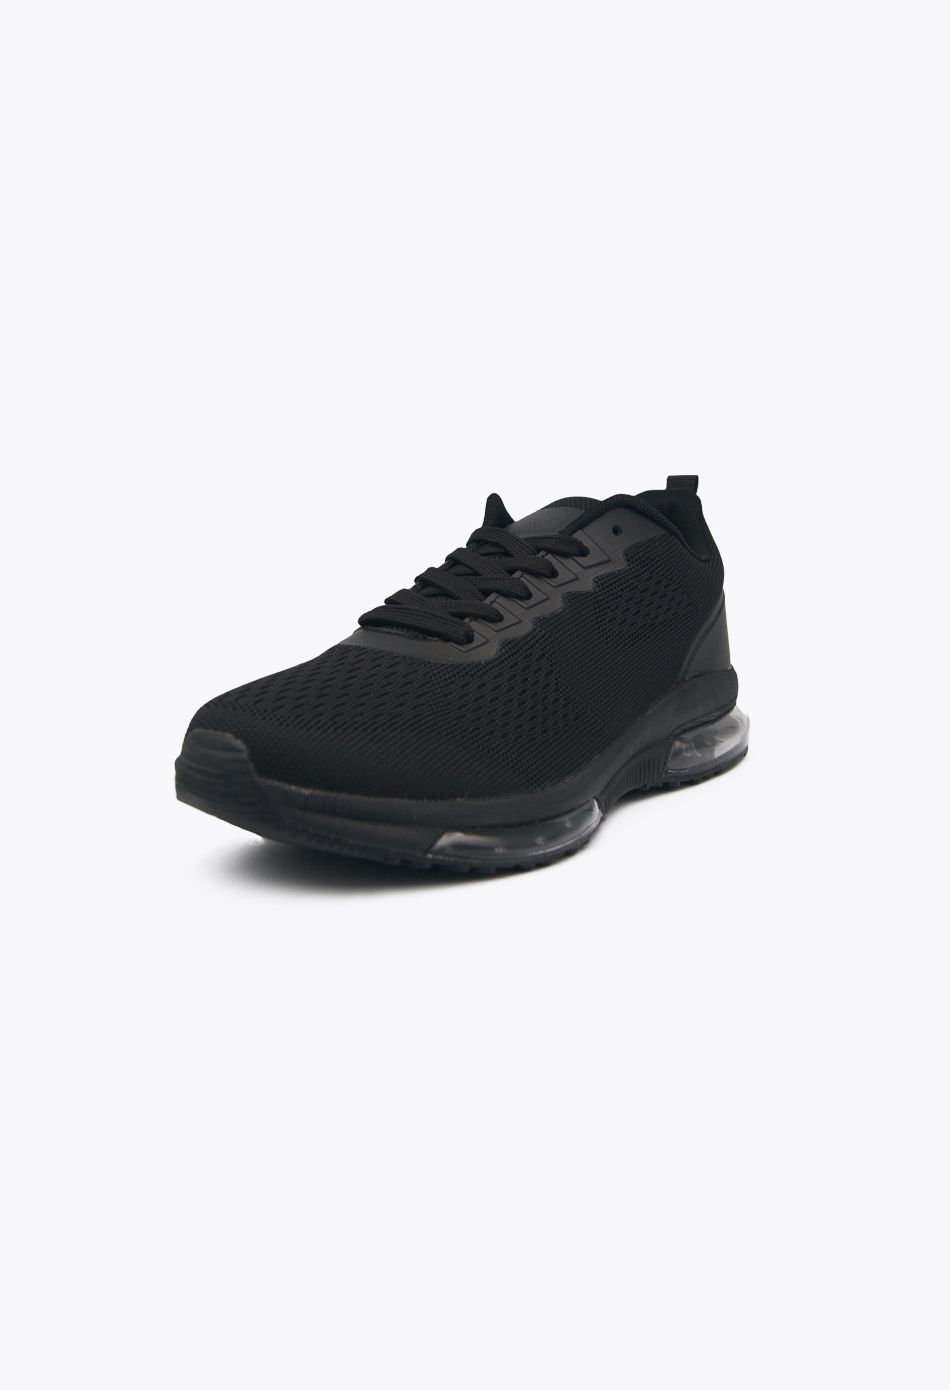 Ανδρικά Αθλητικά Παπούτσια για Τρέξιμο με αεροσόλα Μαύρο / M-6345-black ΑΘΛΗΤΙΚΑ & SNEAKERS joya.gr